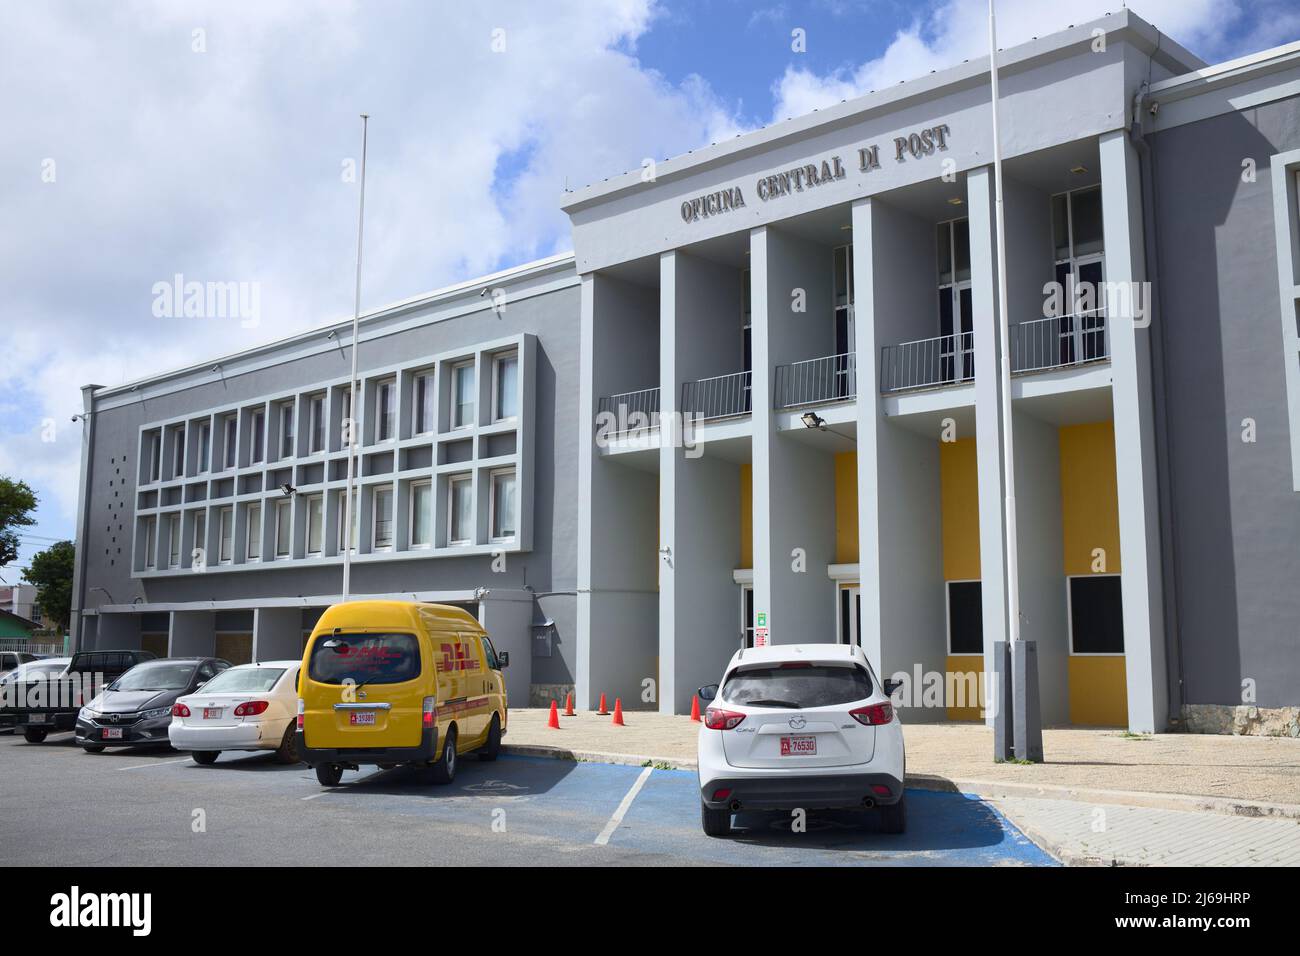 ORANJESTAD, ARUBA - 14. DEZEMBER 2020: Zentrales Postgebäude am Juan E. Irausquin Plaza in Oranjestad auf der karibischen Insel Aruba Stockfoto